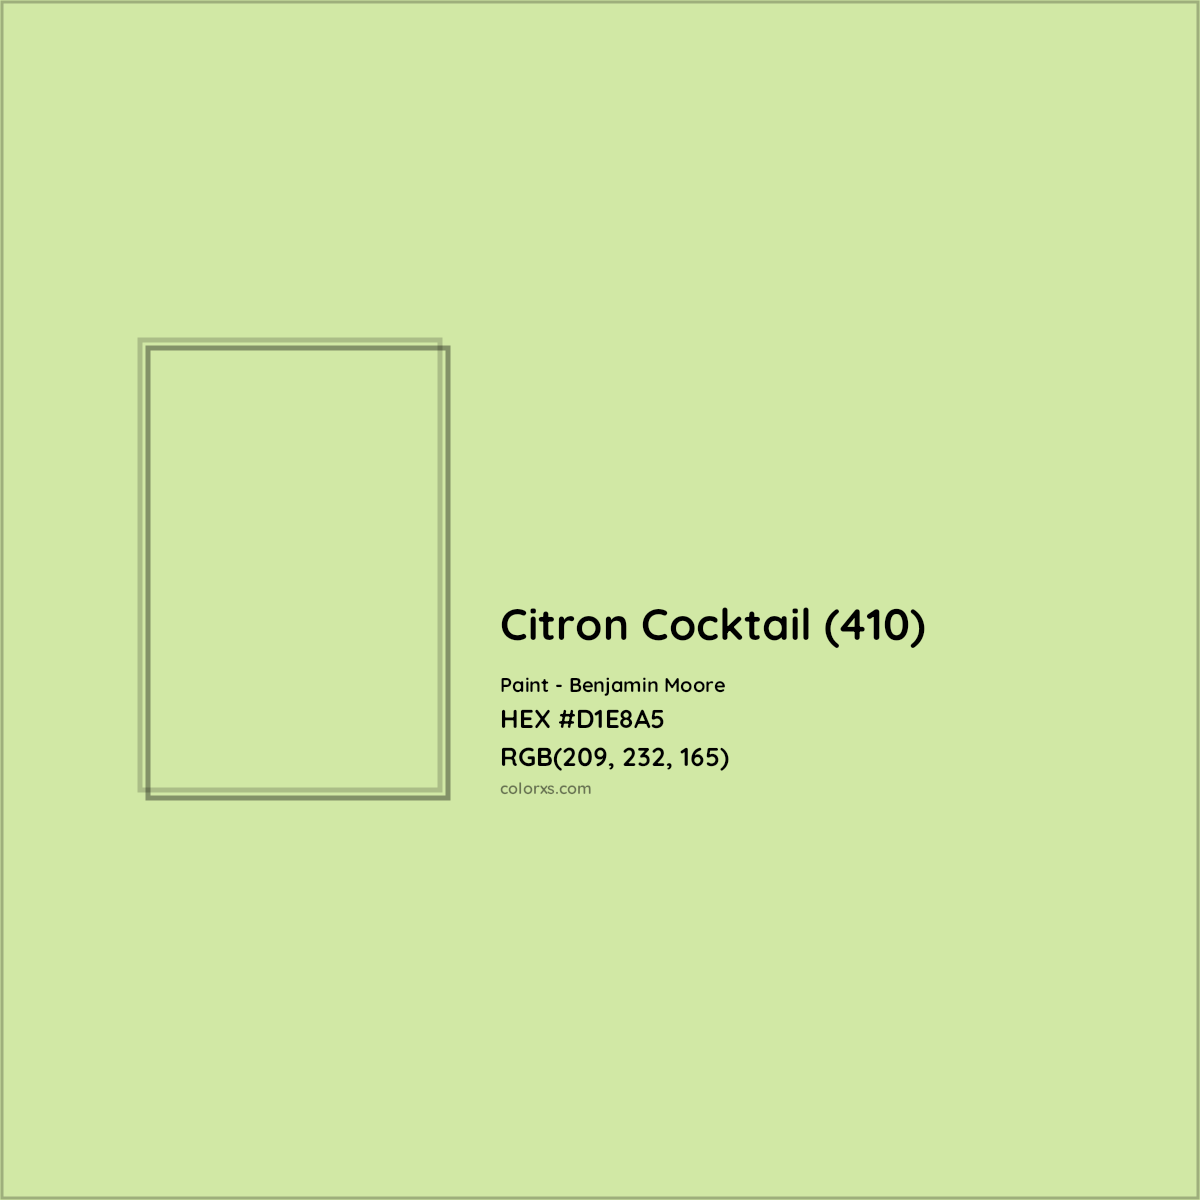 HEX #D1E8A5 Citron Cocktail (410) Paint Benjamin Moore - Color Code